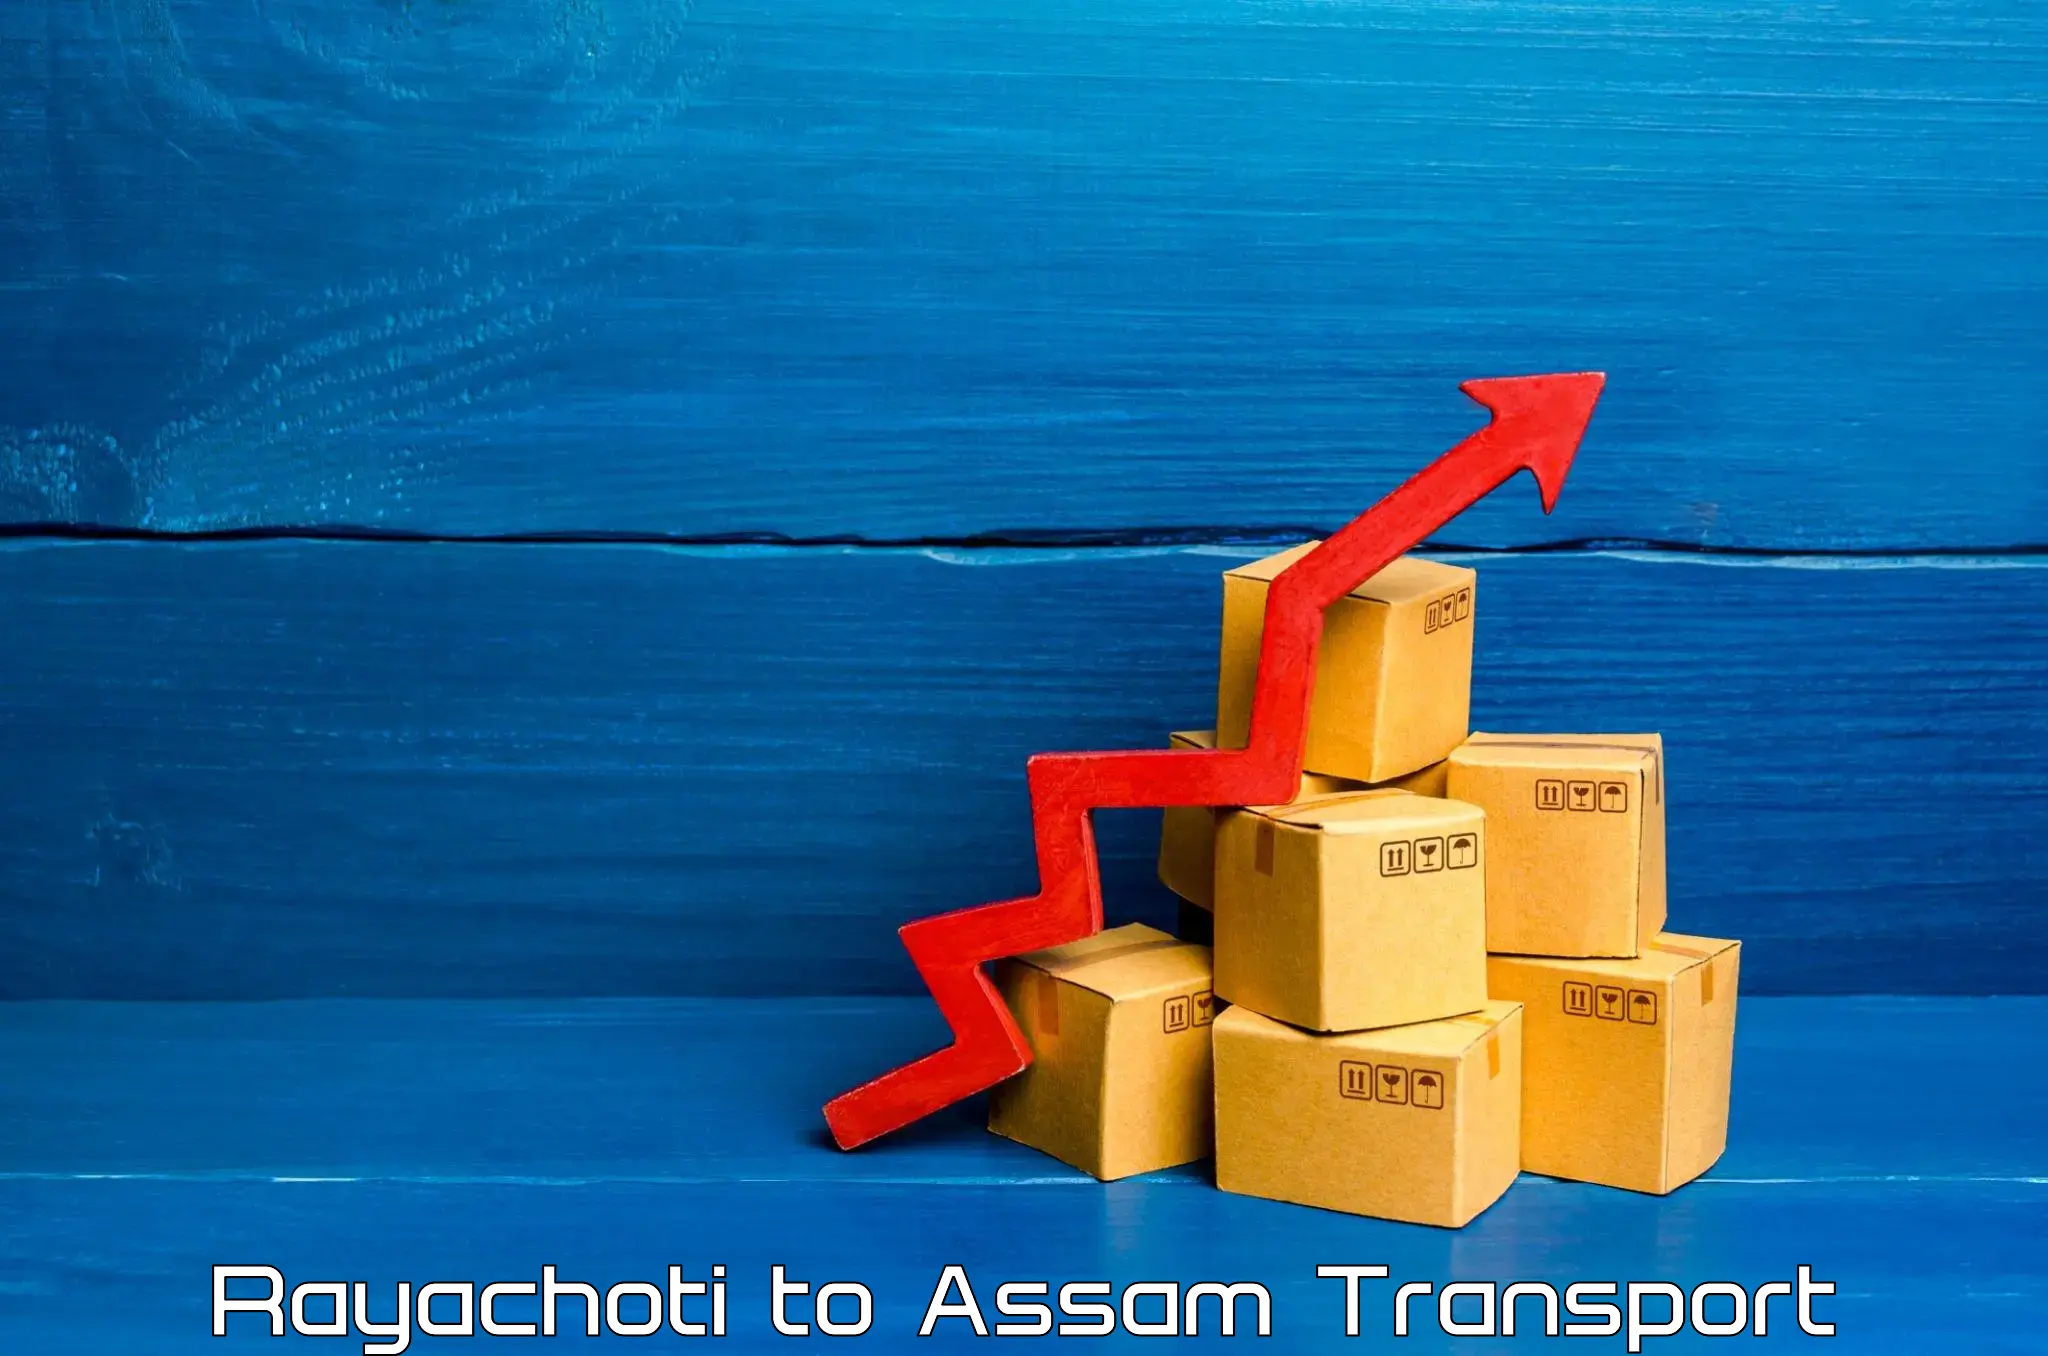 Land transport services Rayachoti to Assam